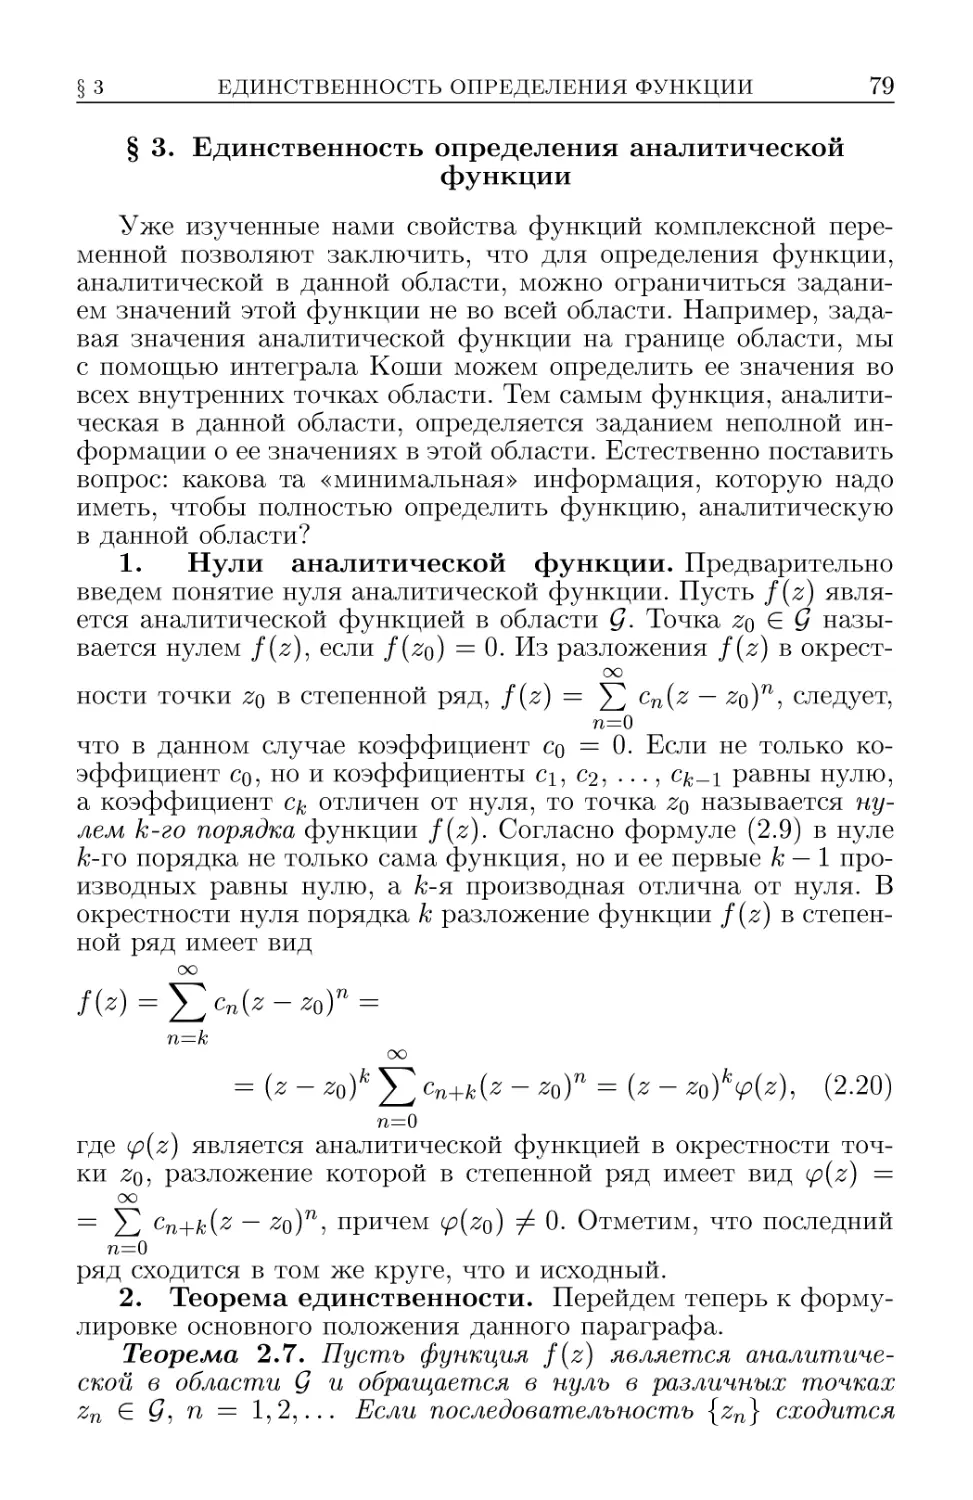 § 3. Единственность определения аналитической функции
2. Теоремы единственности